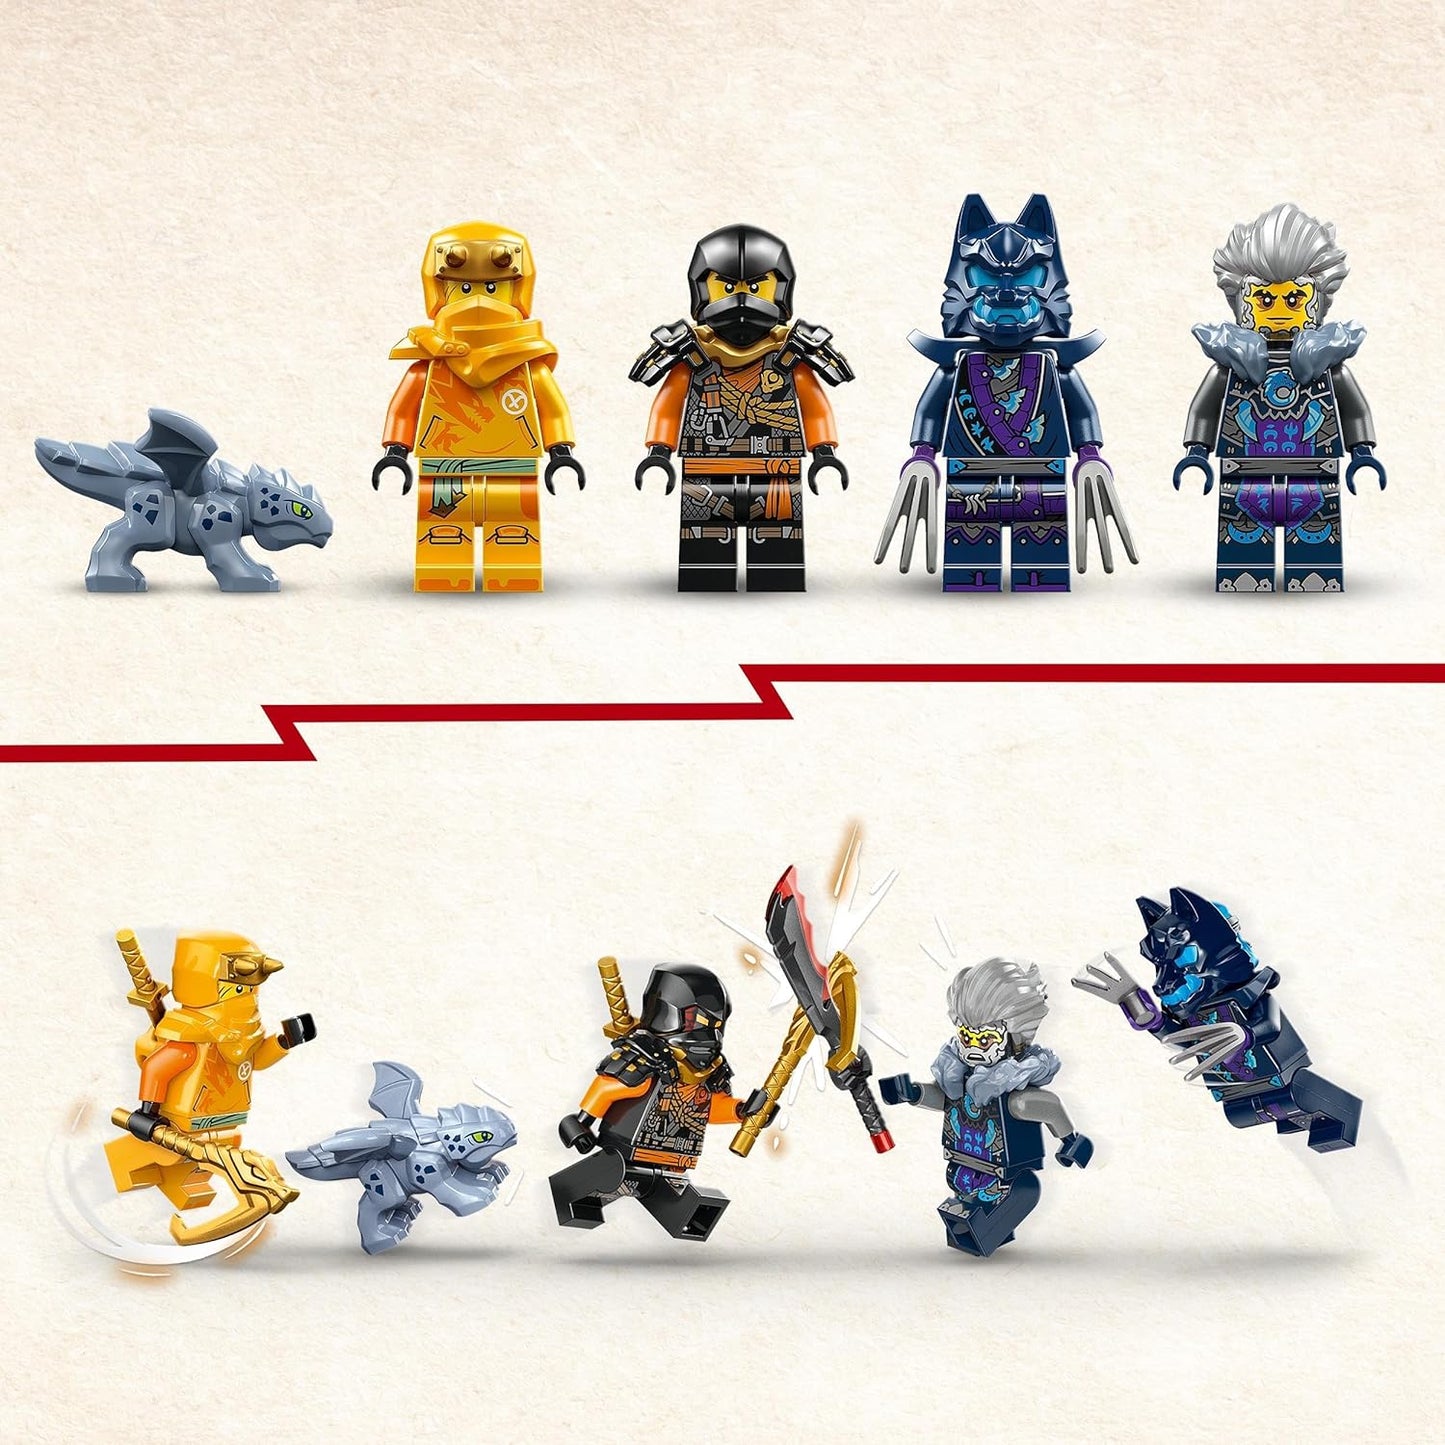 LEGO Brinquedo de carro off-road Ninja NINJAGO Arin, conjunto Dragons Rising com figura de dragão e 4 minifiguras de personagens Ninja para crianças, meninos e meninas com mais de 7 anos, modelo de veículo, ideia de presente 71811